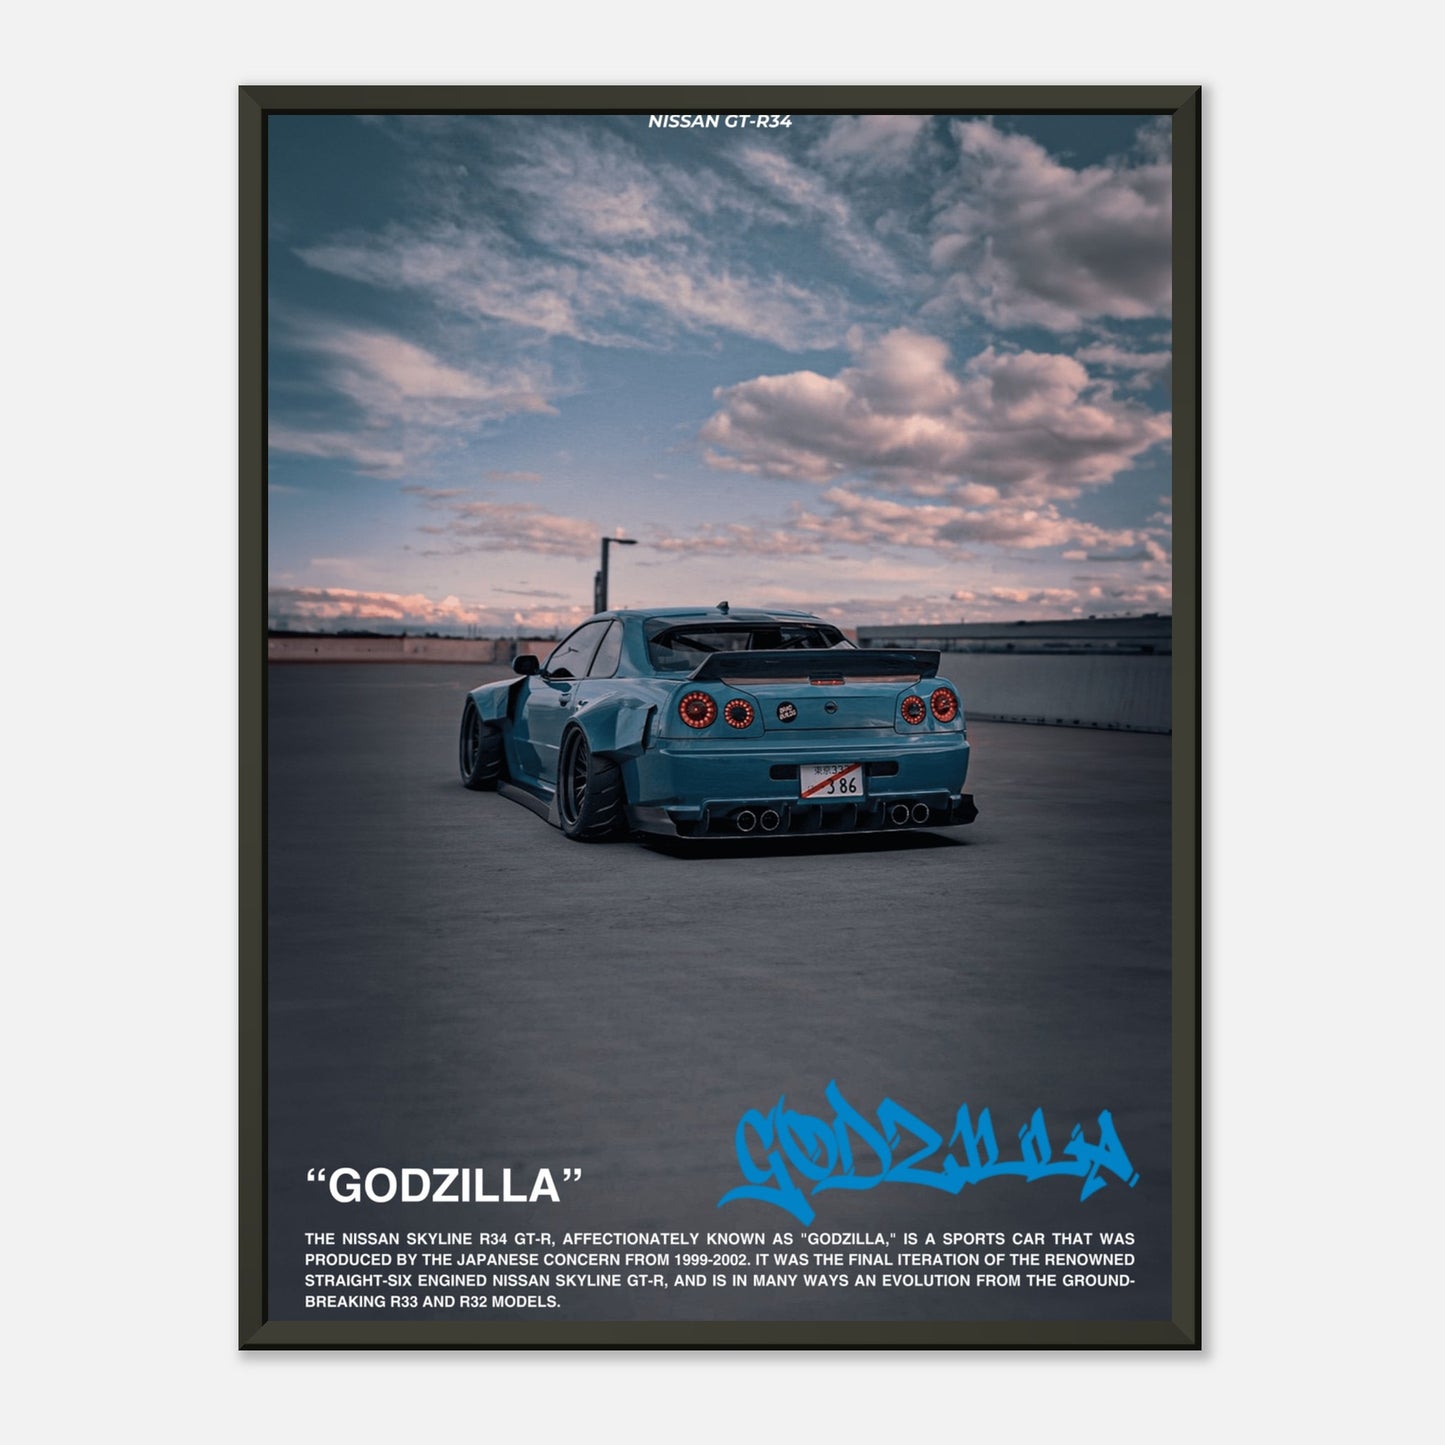 Nissan GTR-34 "Godzilla"